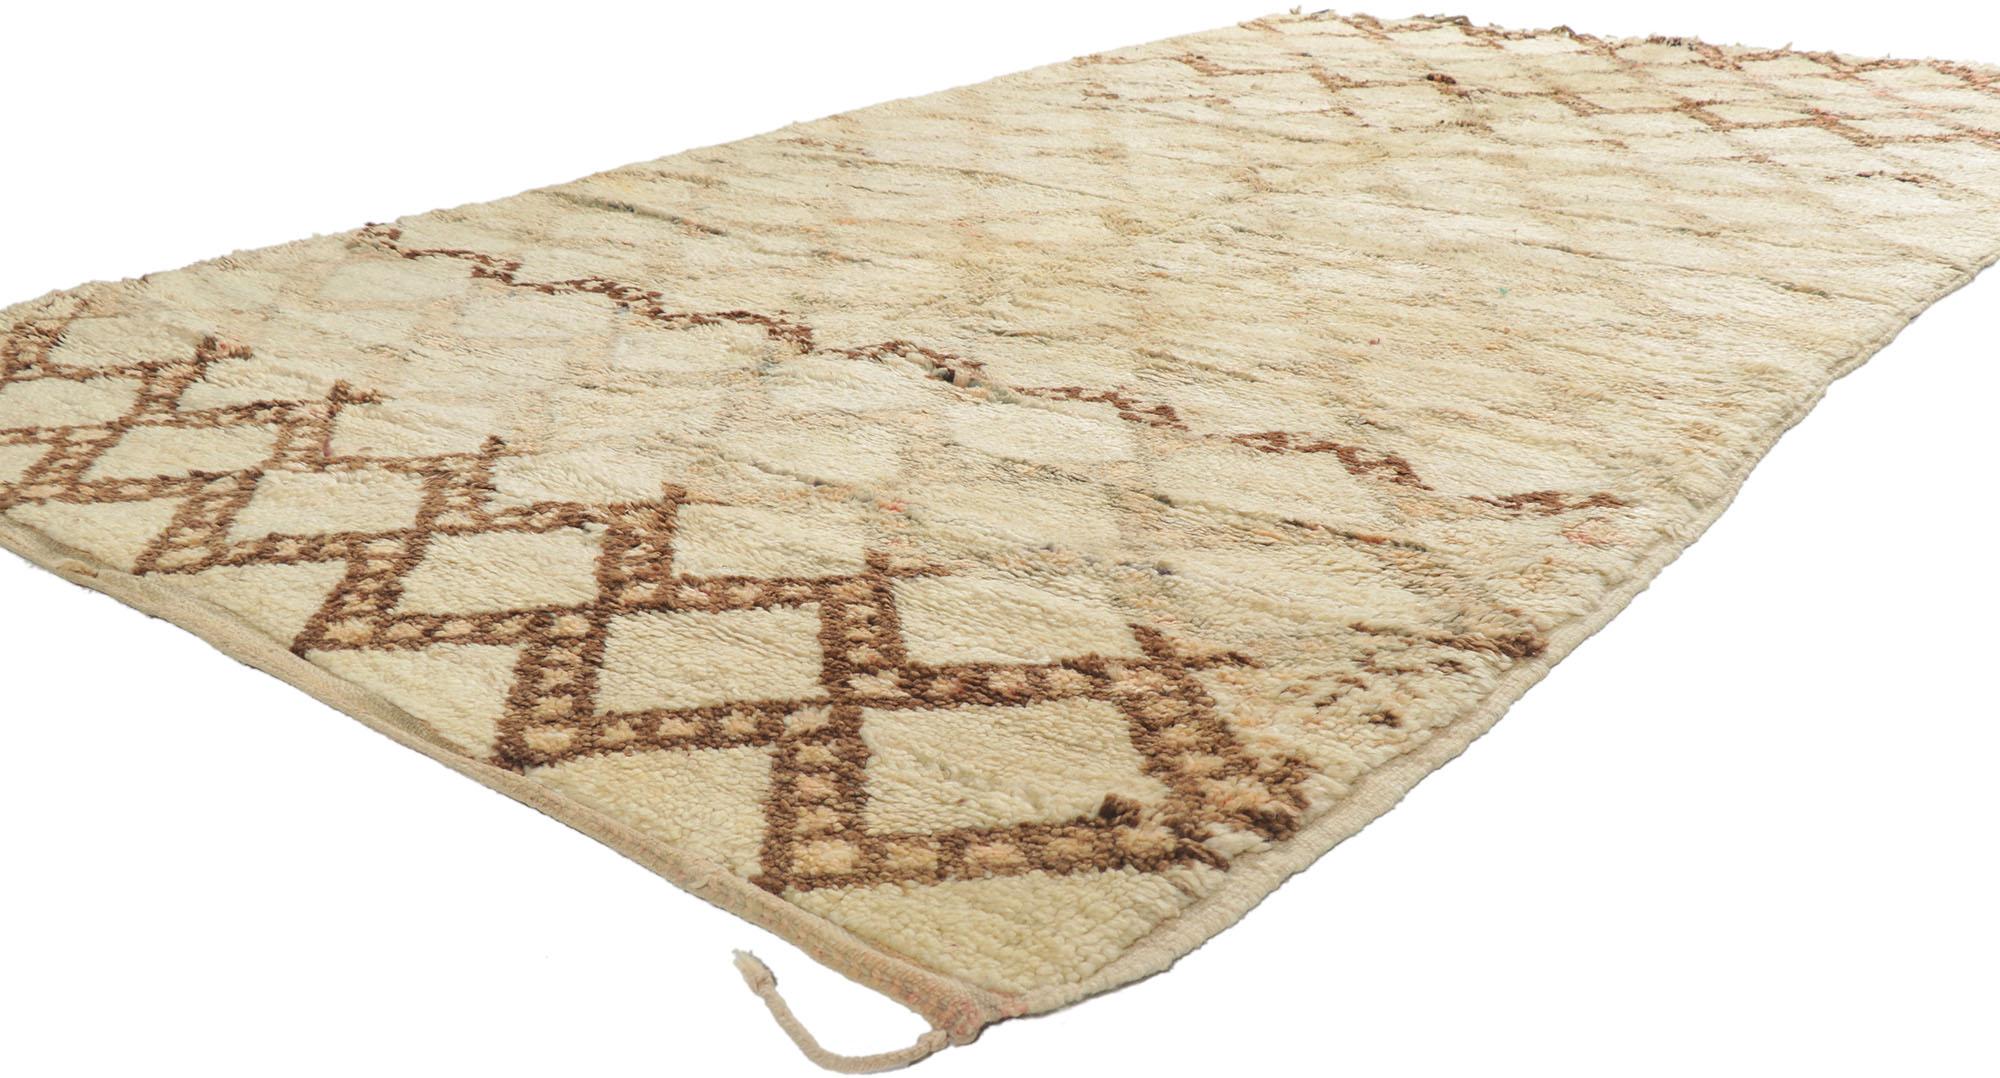 21379 Vintage Berber Marokkanisch Beni Ourain Teppich 05'07 x 10'02. Mit seiner Schlichtheit, seinem weichen Flor und seinem Stammesstil ist dieser handgeknüpfte marokkanische Berberteppich Beni Ourain aus Wolle eine fesselnde Vision gewebter